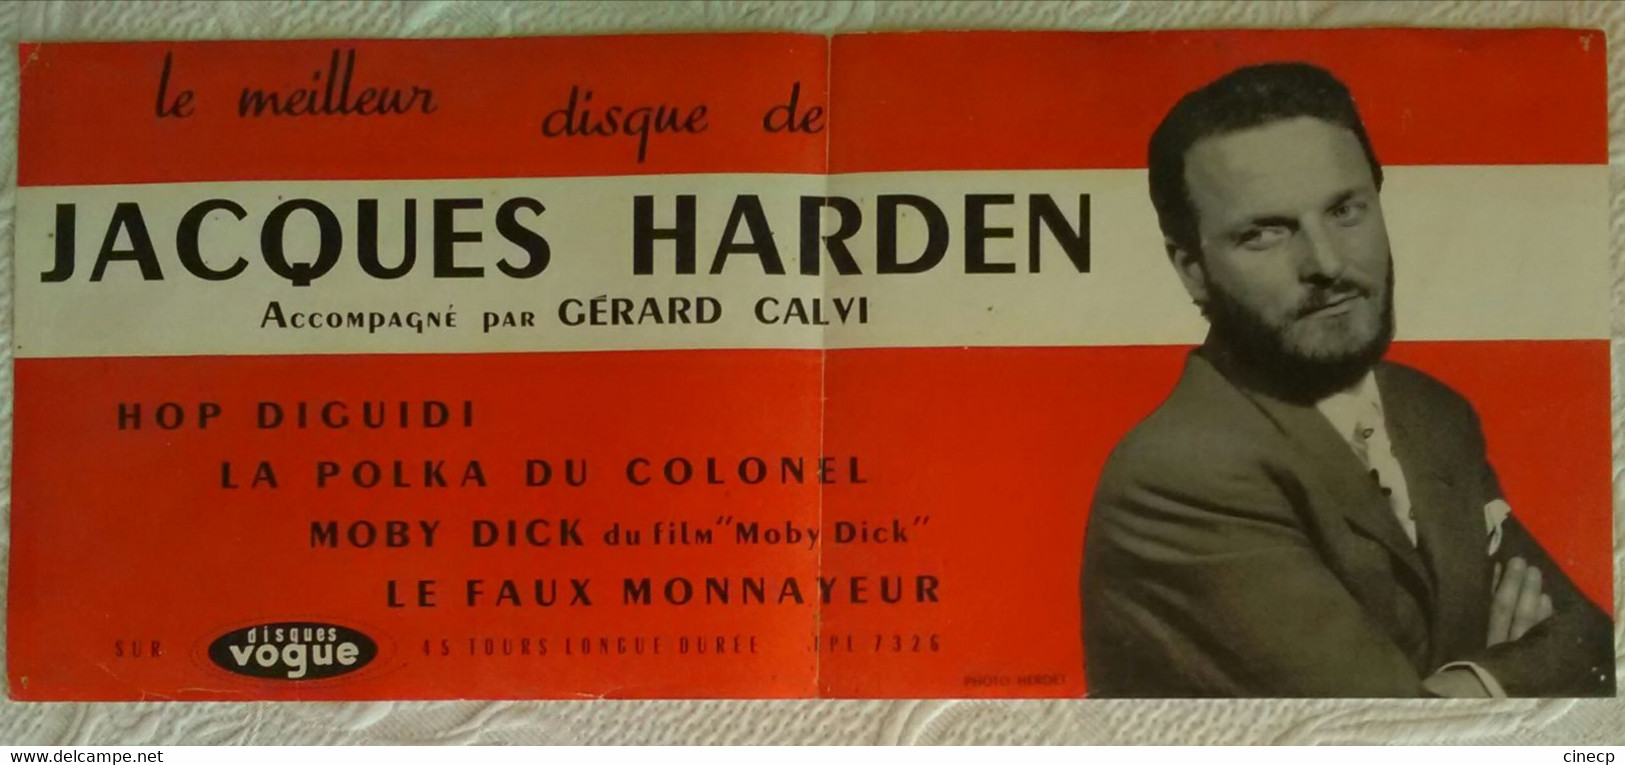 AFFICHE MUSIQUE JACQUES HARDEN GERARD CALVI Publicité DISQUE VOGUE 1950's MUSIQUE DE FILM CINEMA - Manifesti & Poster